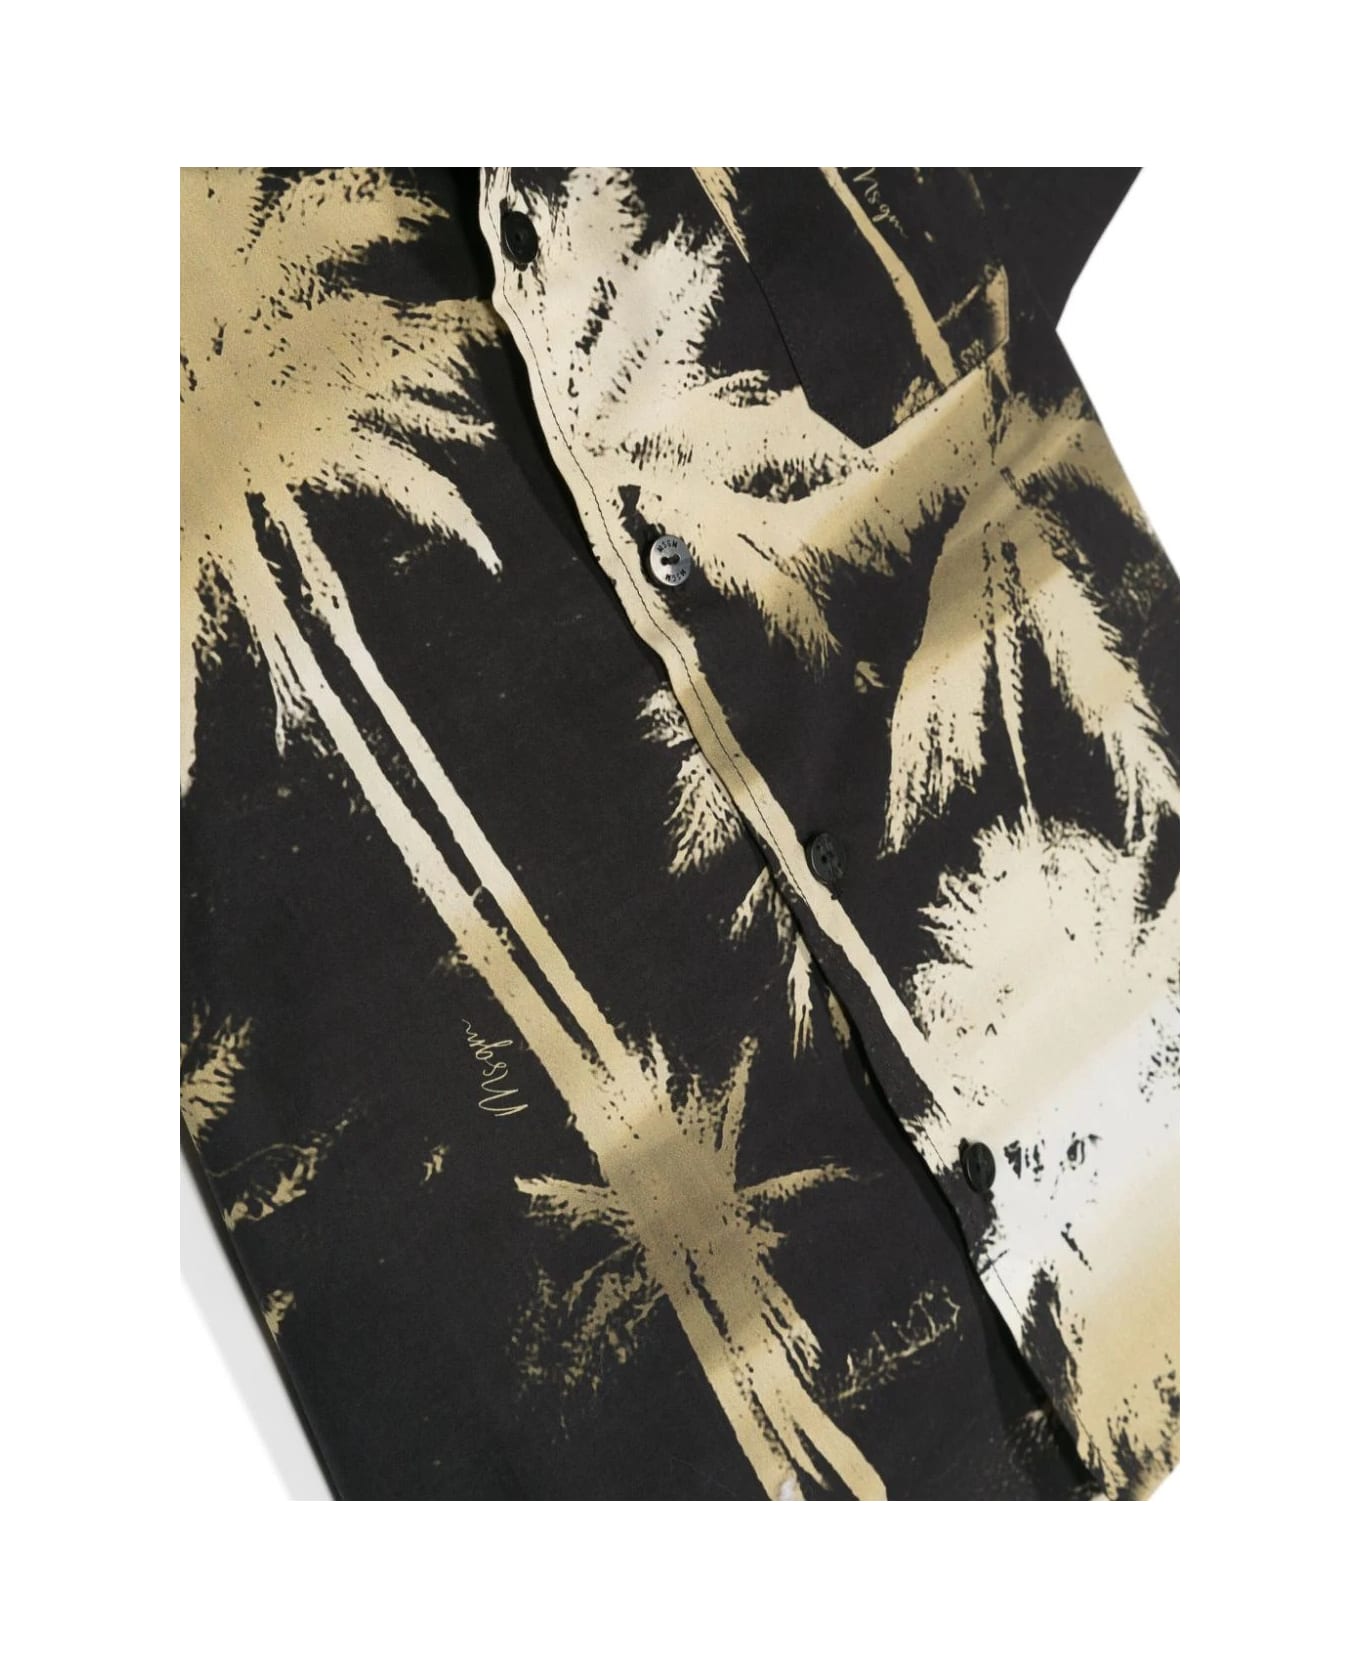 MSGM Black Bowling Shirt With Palm Print - Nero シャツ